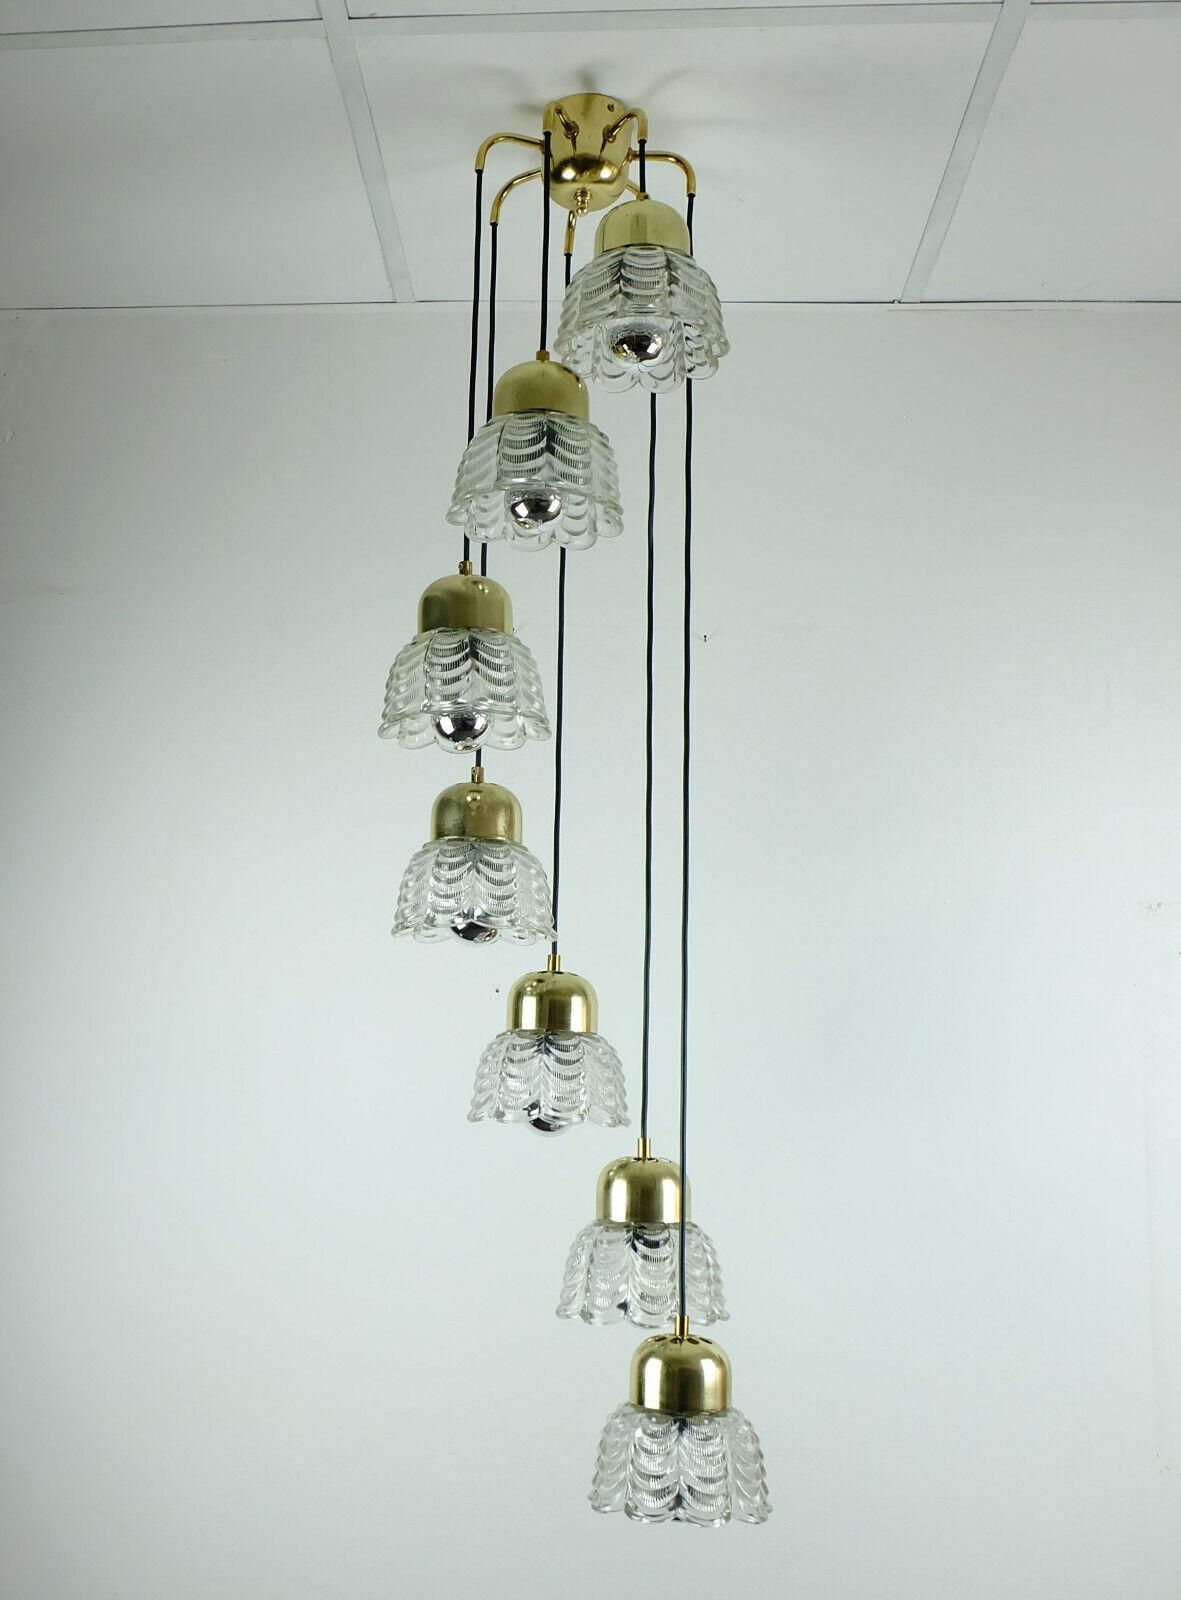 Lampe à suspension italienne autrichienne glamour des années 1960. Il est fabriqué en laiton poli et comporte 7 bras avec des abat-jour en verre en forme de fleur suspendus à différentes longueurs. Les abat-jour sont en verre épais. Fils électriques